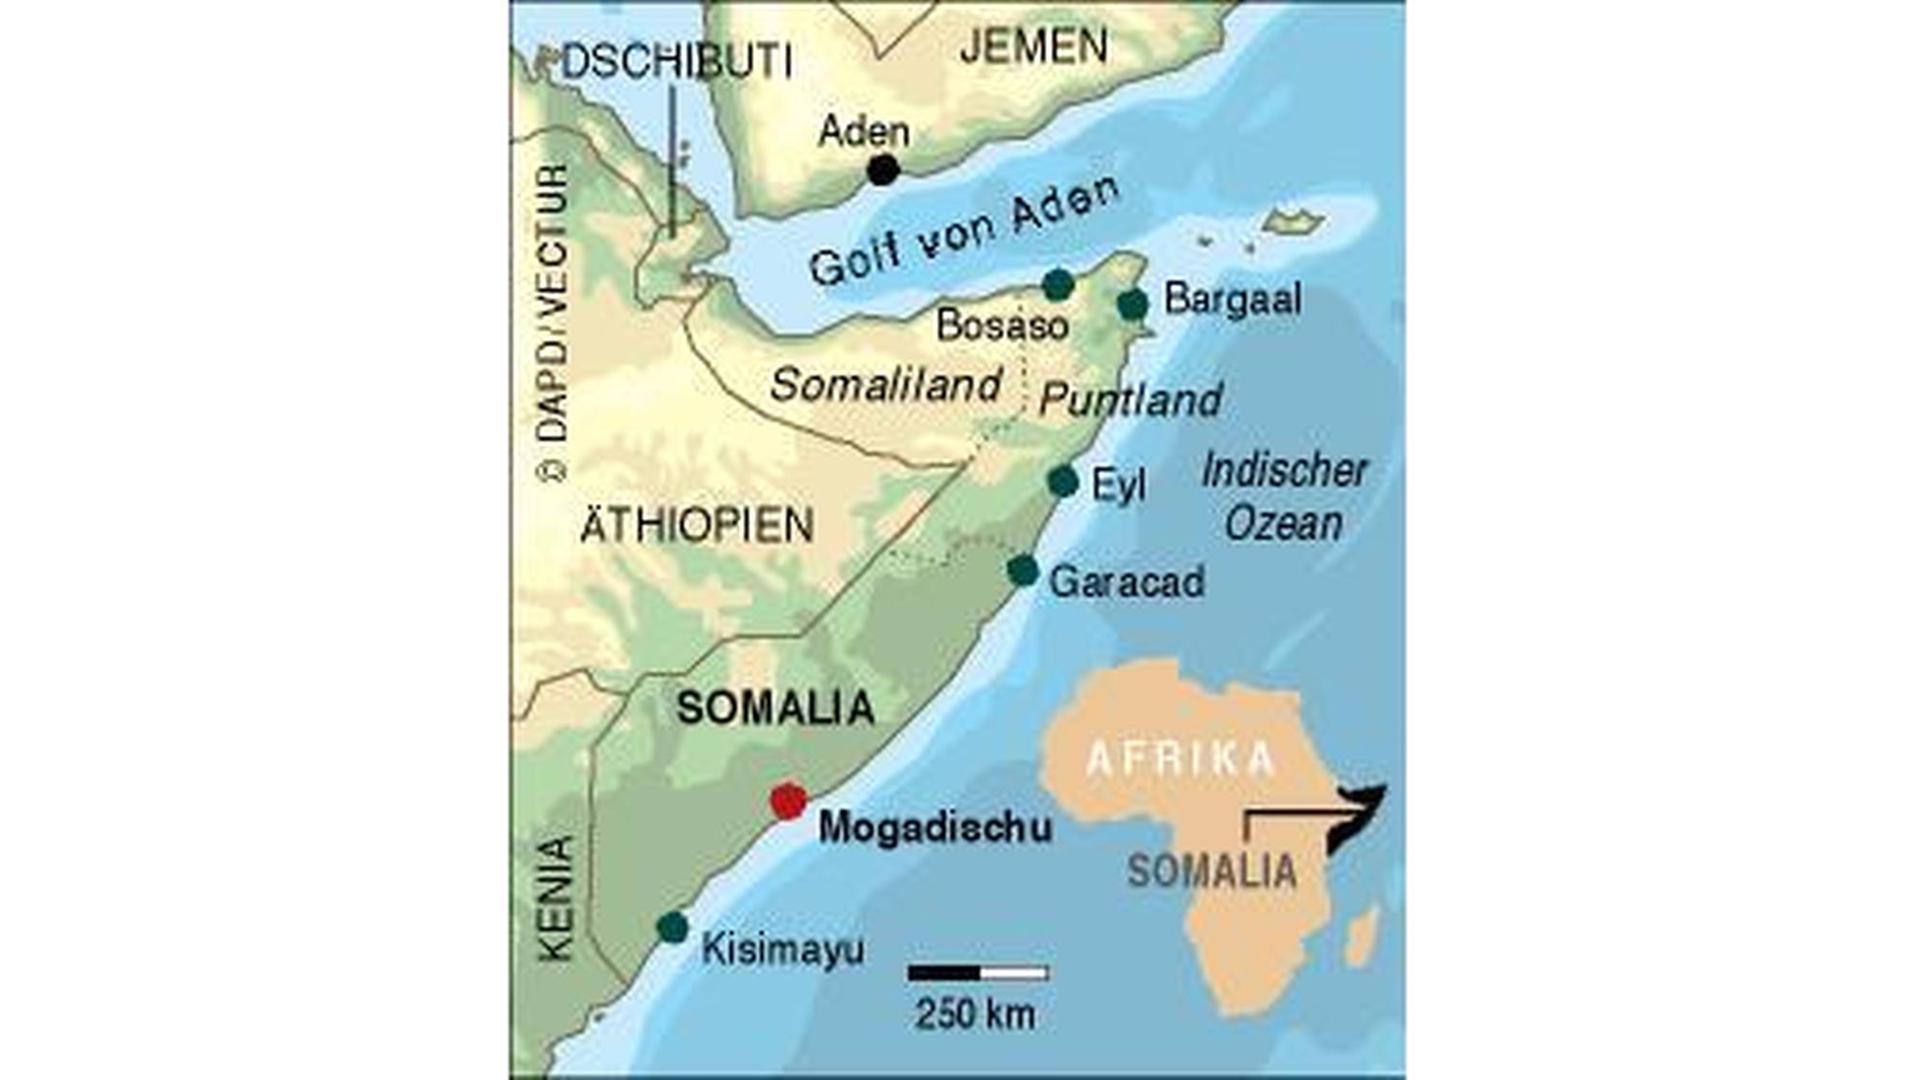 Das Bild zeigt eine Grafik mit einer Landkarte von Somalia und der Lage des Landes auf dem afrikanischen Kontinent